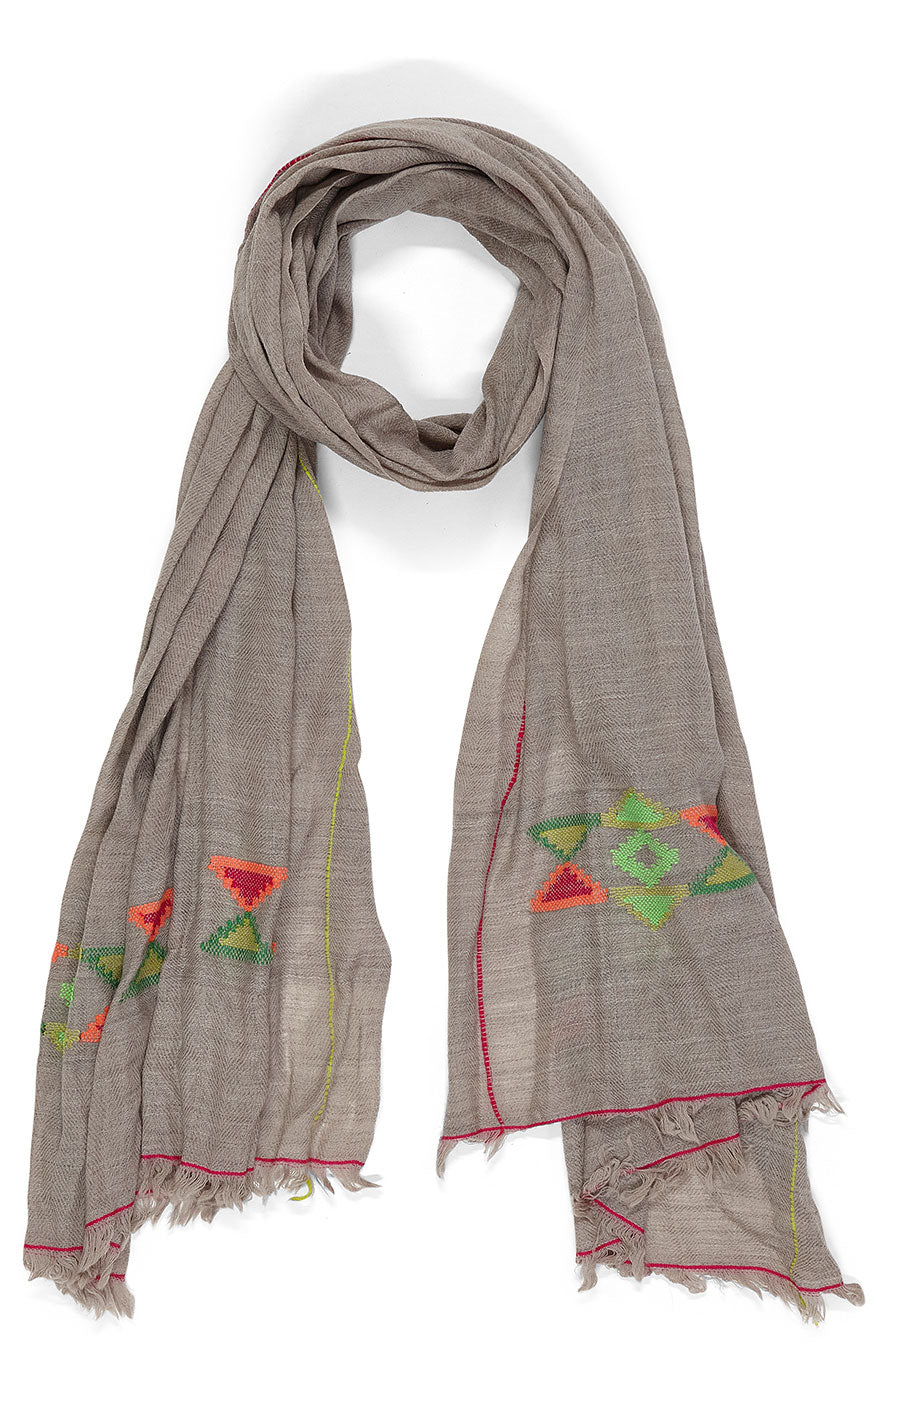 Tørklæde - Pashmina uld - Gråt med pink/grønt mønster